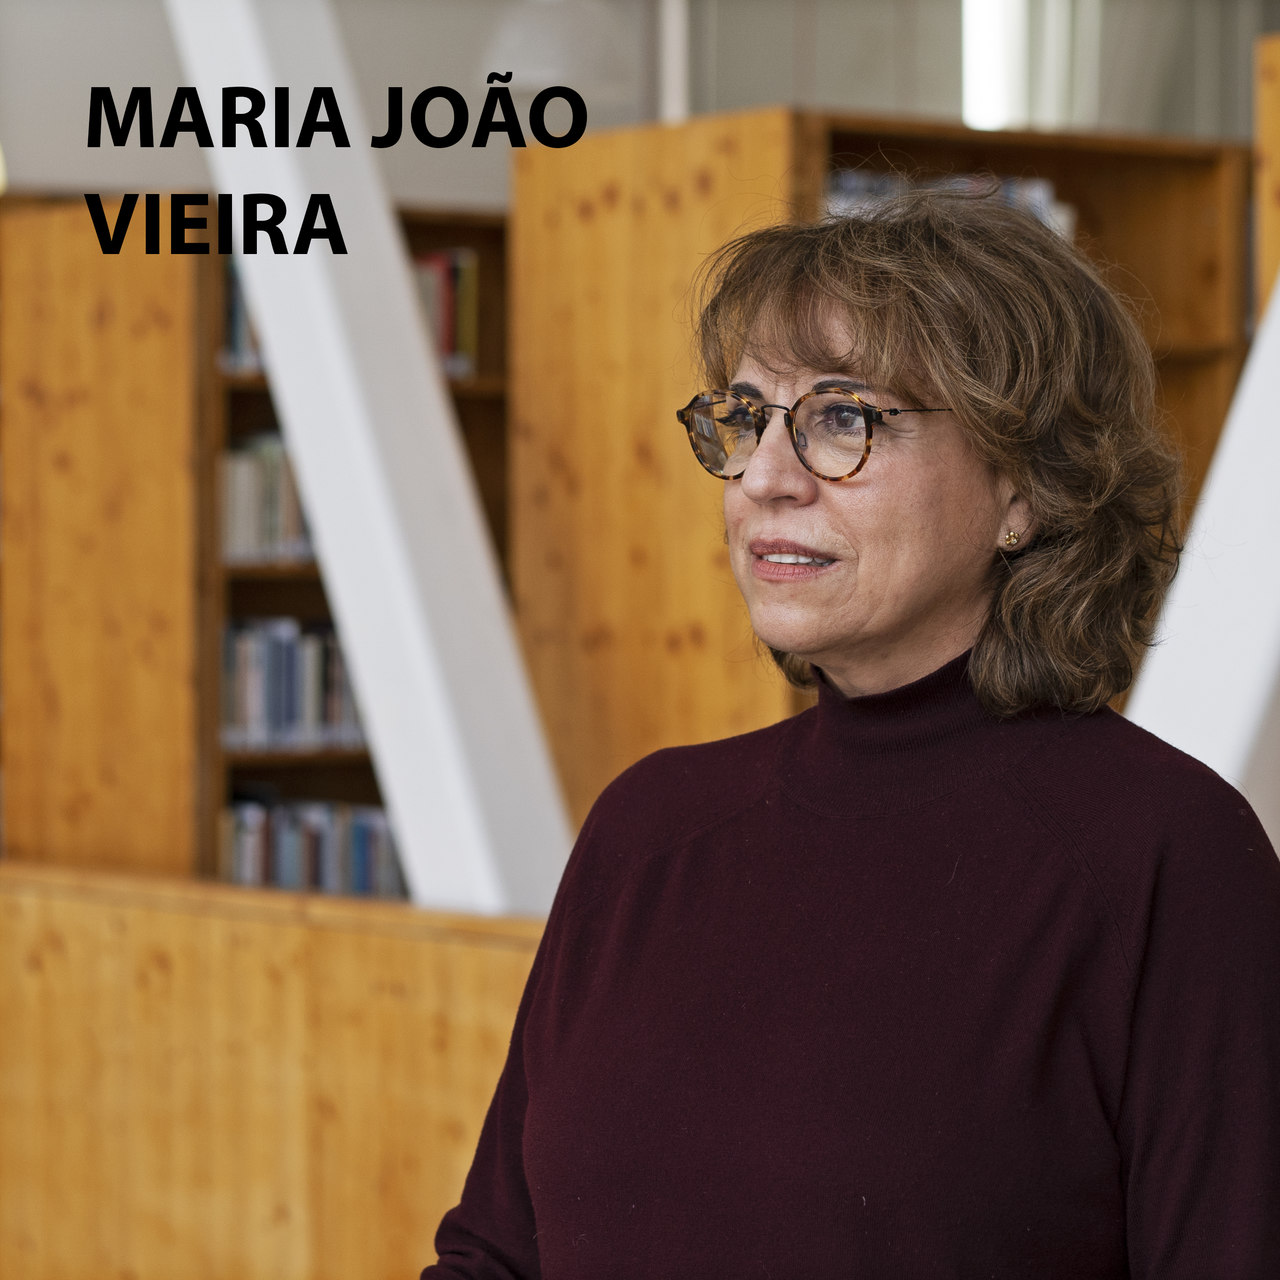 Livro de Cabeceira EP.21 – Maria João Vieira apresenta a obra “Novas Cartas Portuguesas”.